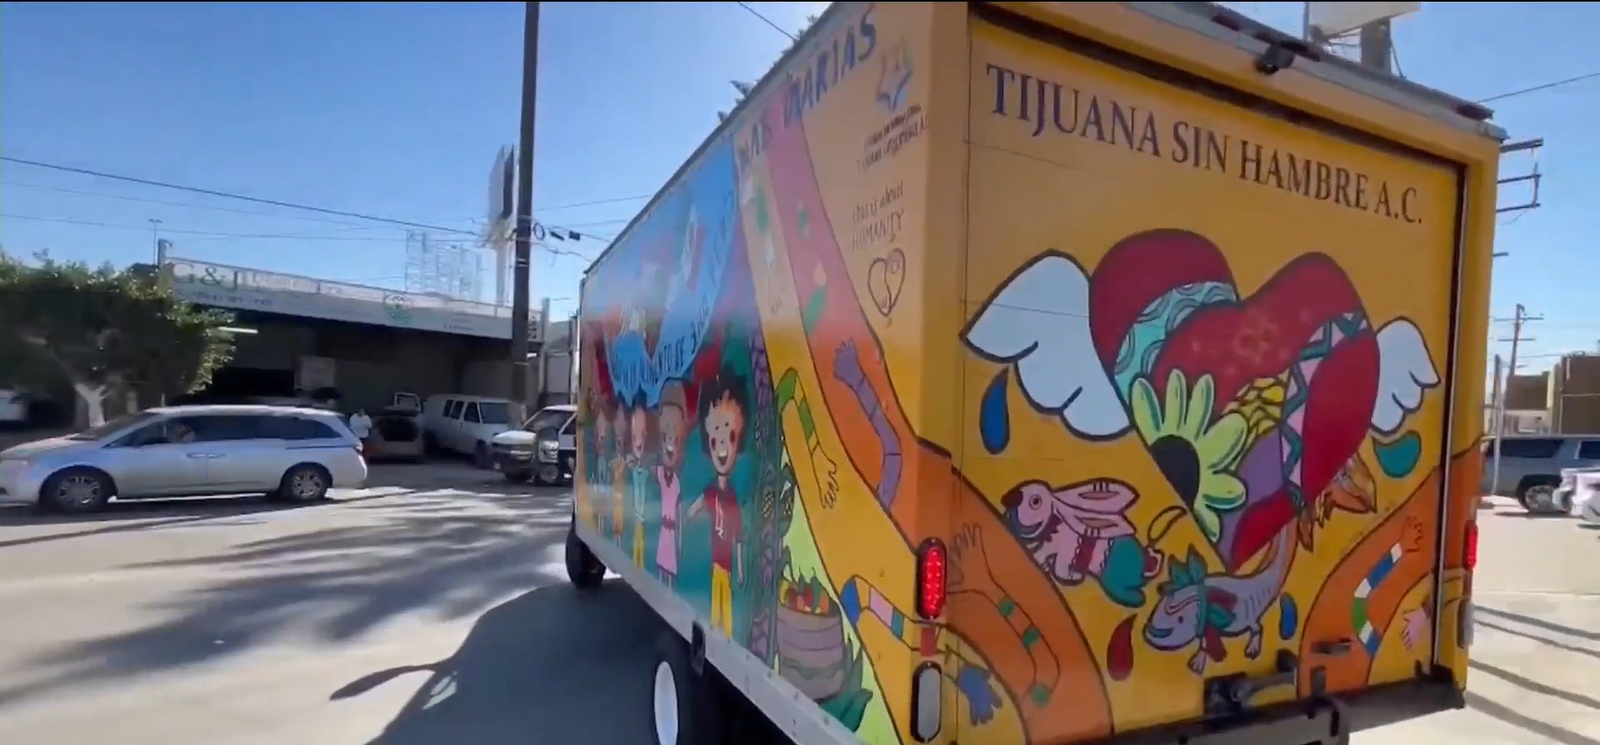 Personajes de Paseo de la Fama de Tijuana unidos en proyecto que reparte más de 3 mil comidas en Tijuana